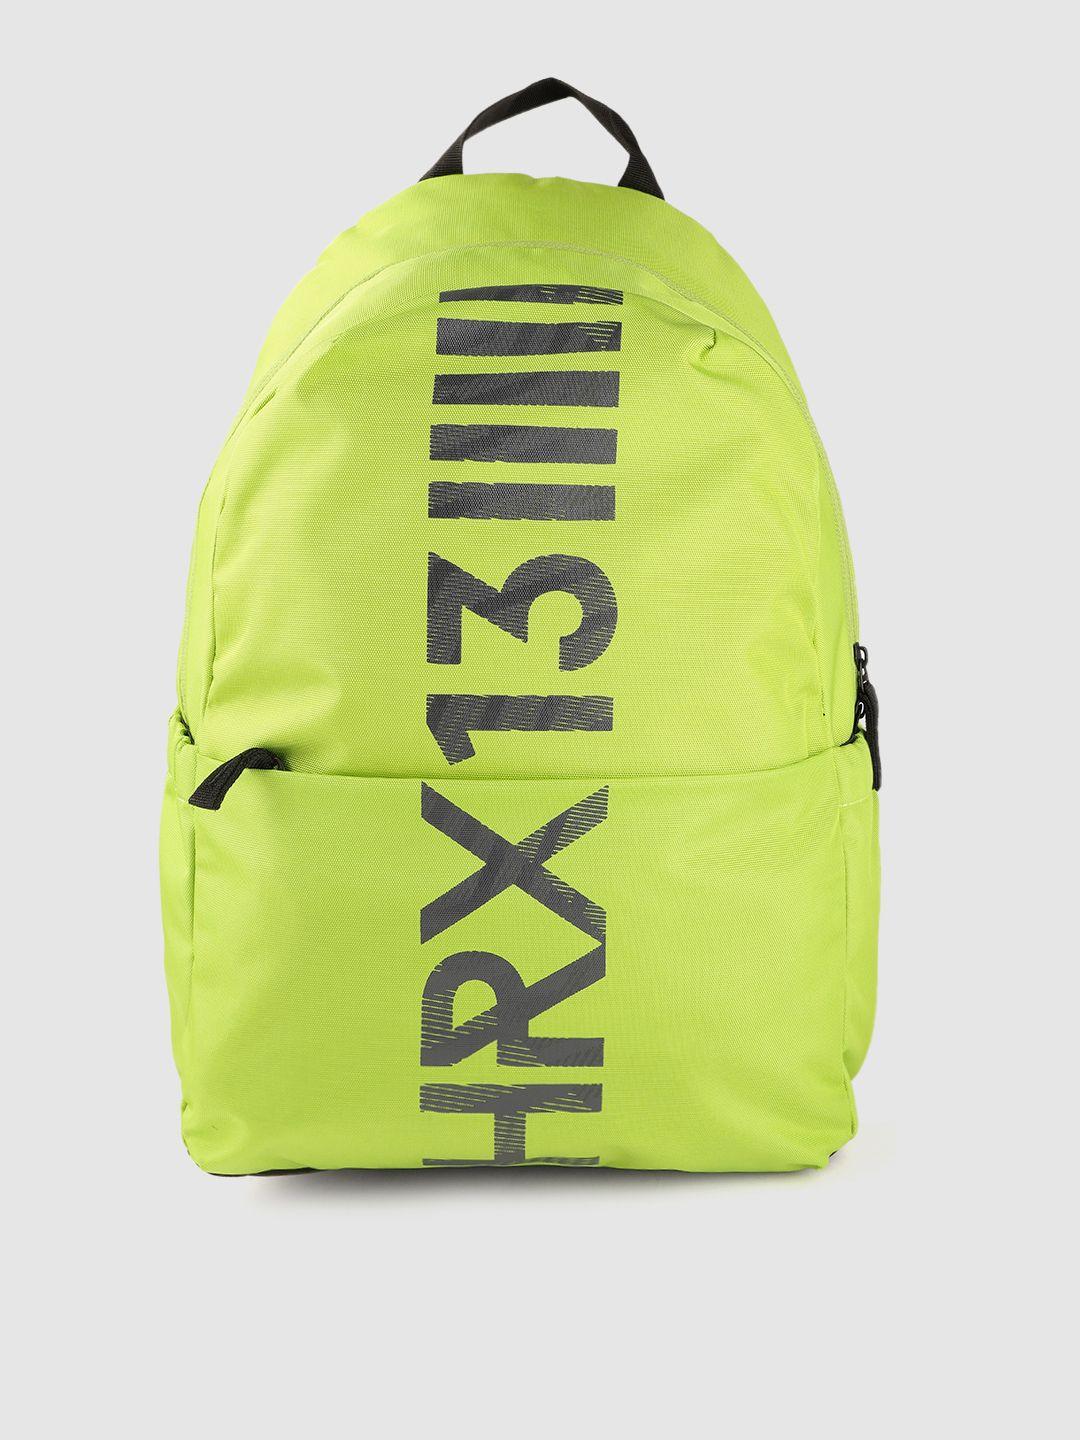 hrx by hrithik roshan unisex lime green & black brand logo backpack 23.7 l